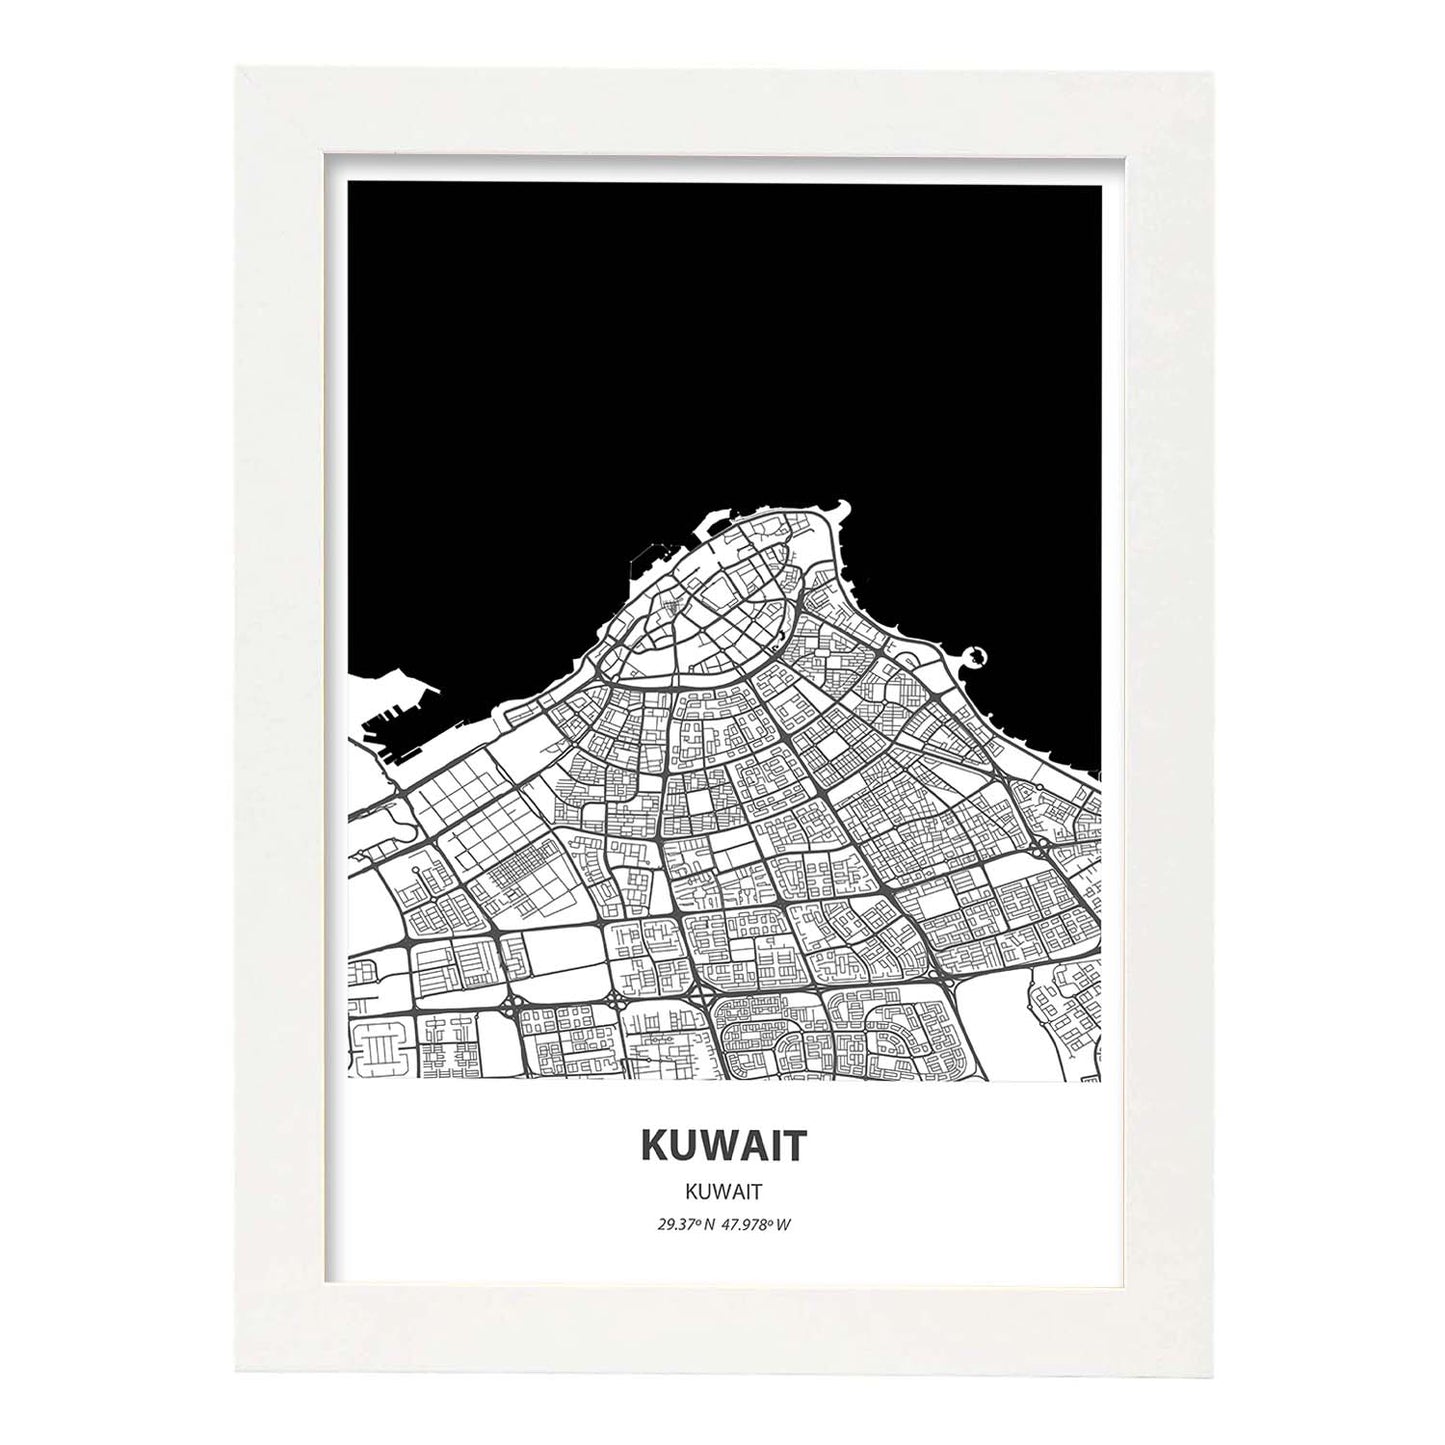 Poster con mapa de Kuwait - Kuwait. Láminas de ciudades de Oriente Medio con mares y ríos en color negro.-Artwork-Nacnic-A3-Marco Blanco-Nacnic Estudio SL